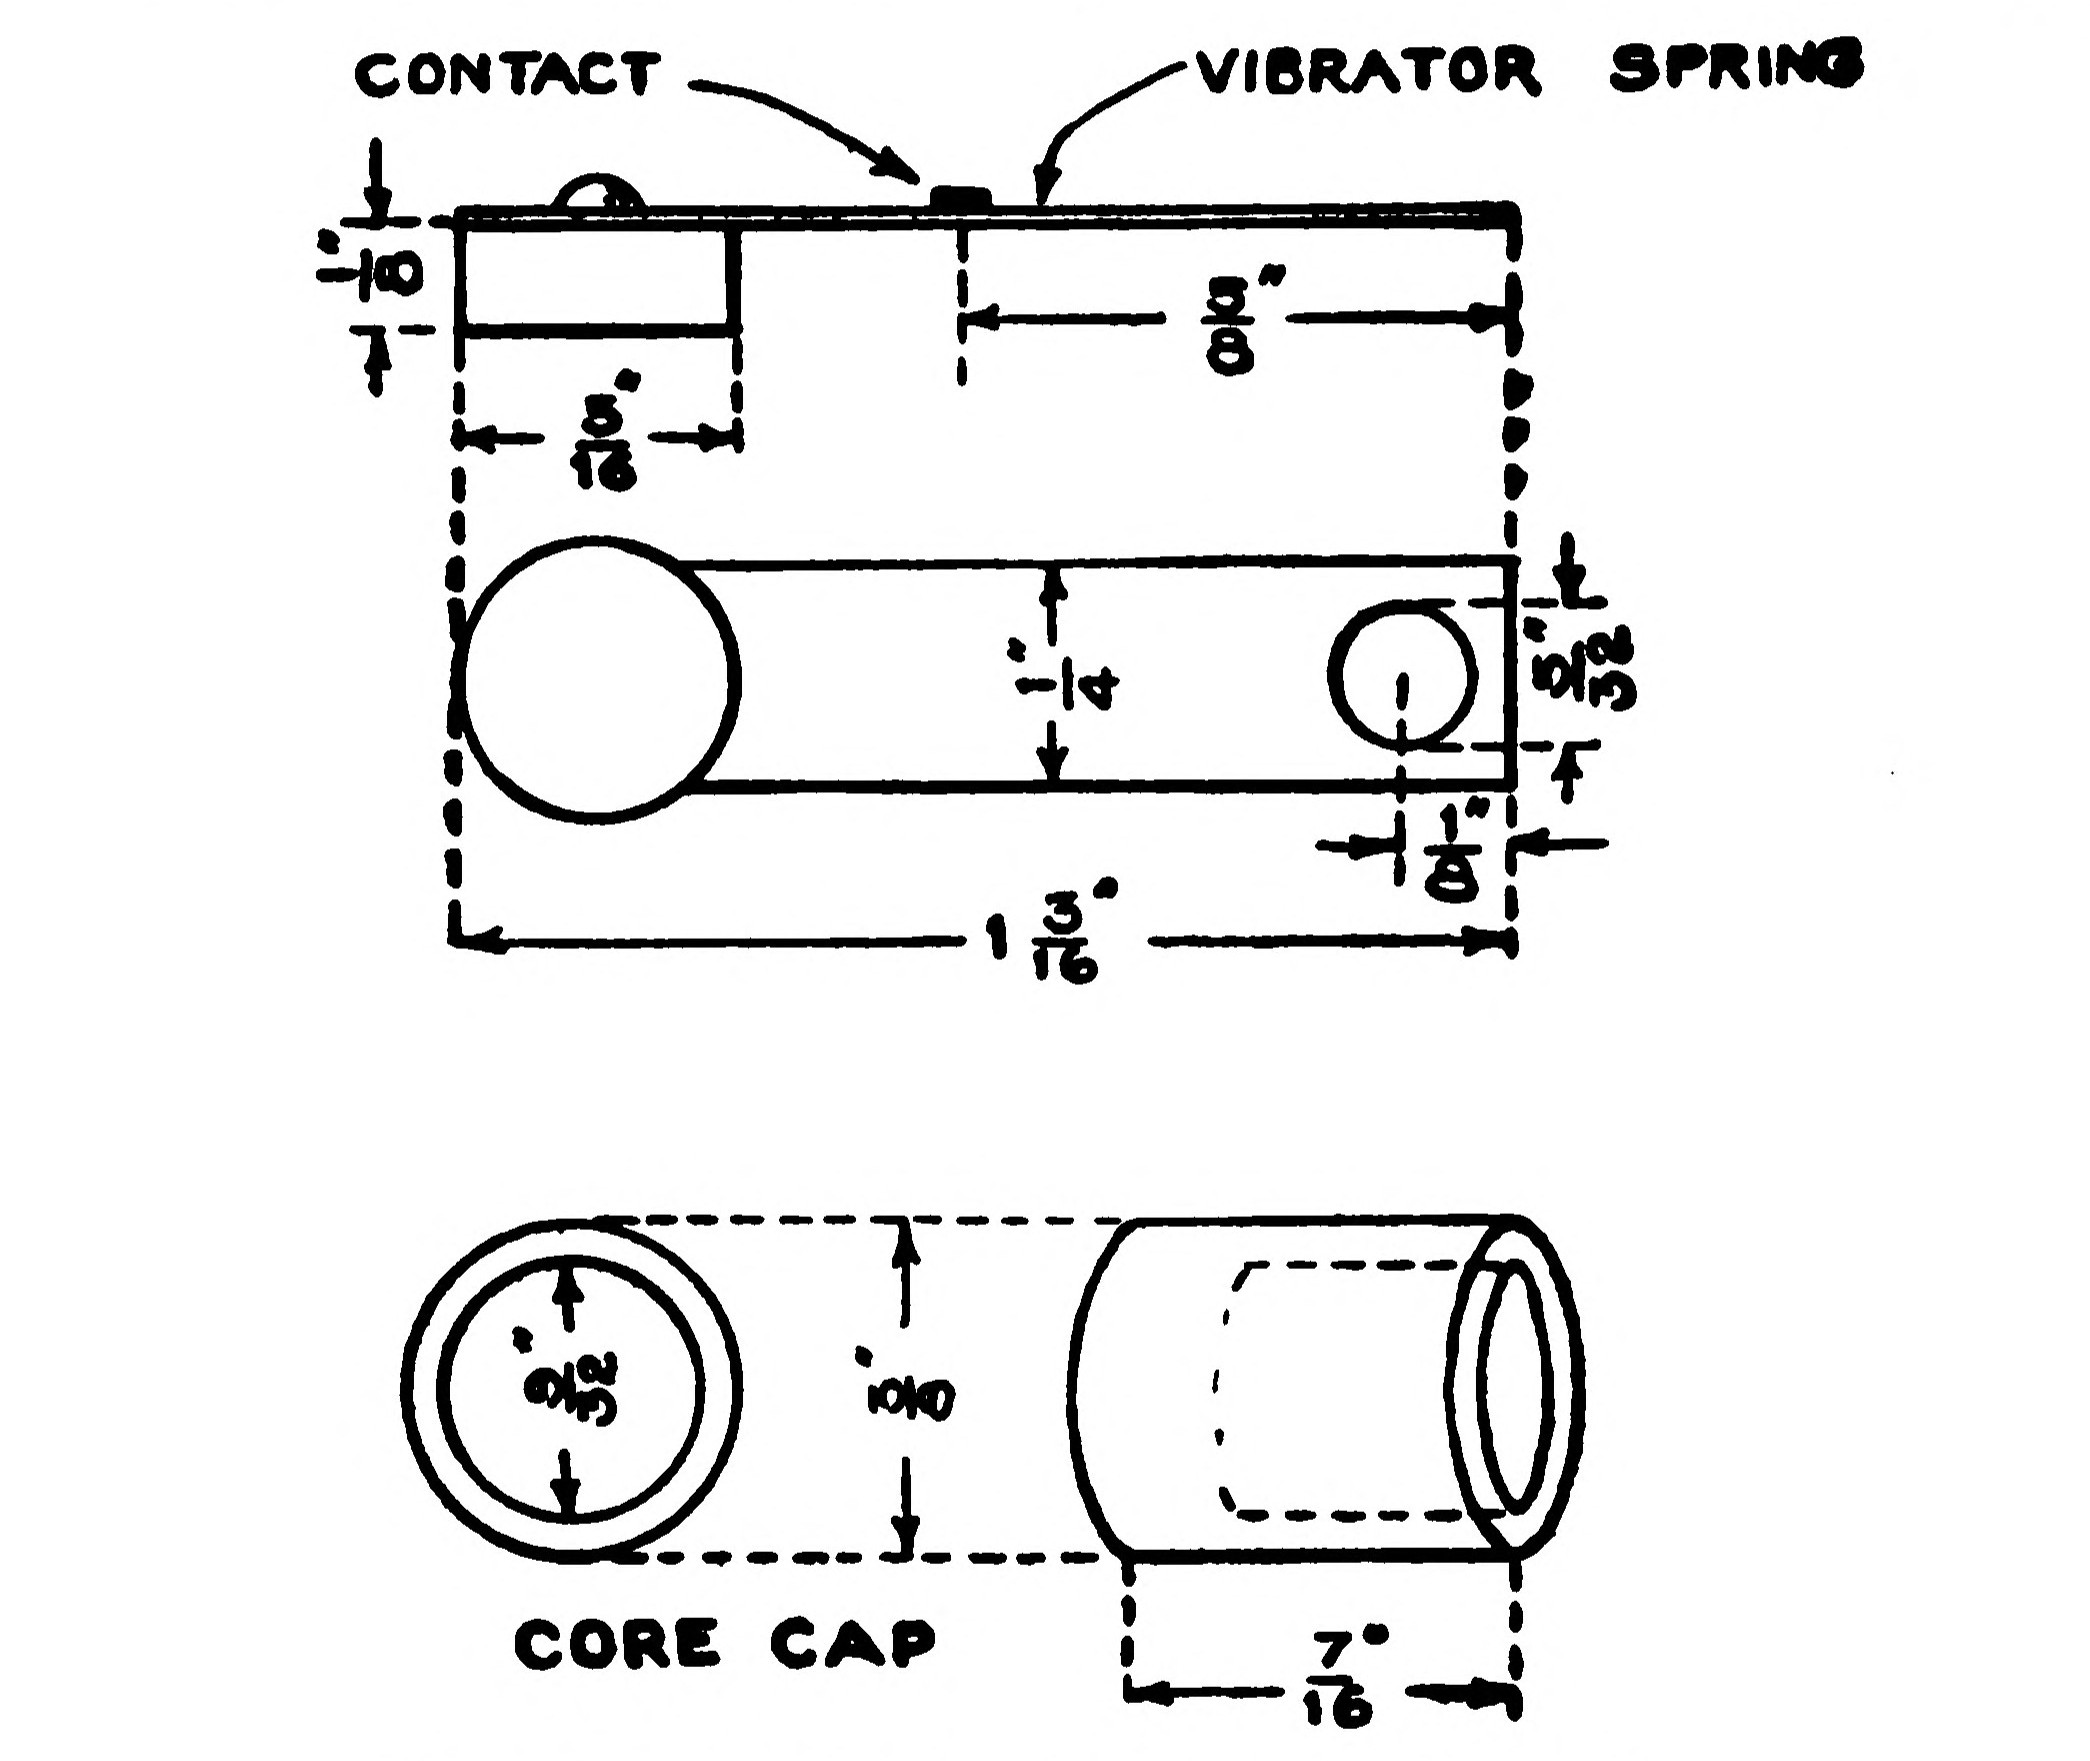 FIG. 101.—Vibrator Parts and Core Cap.